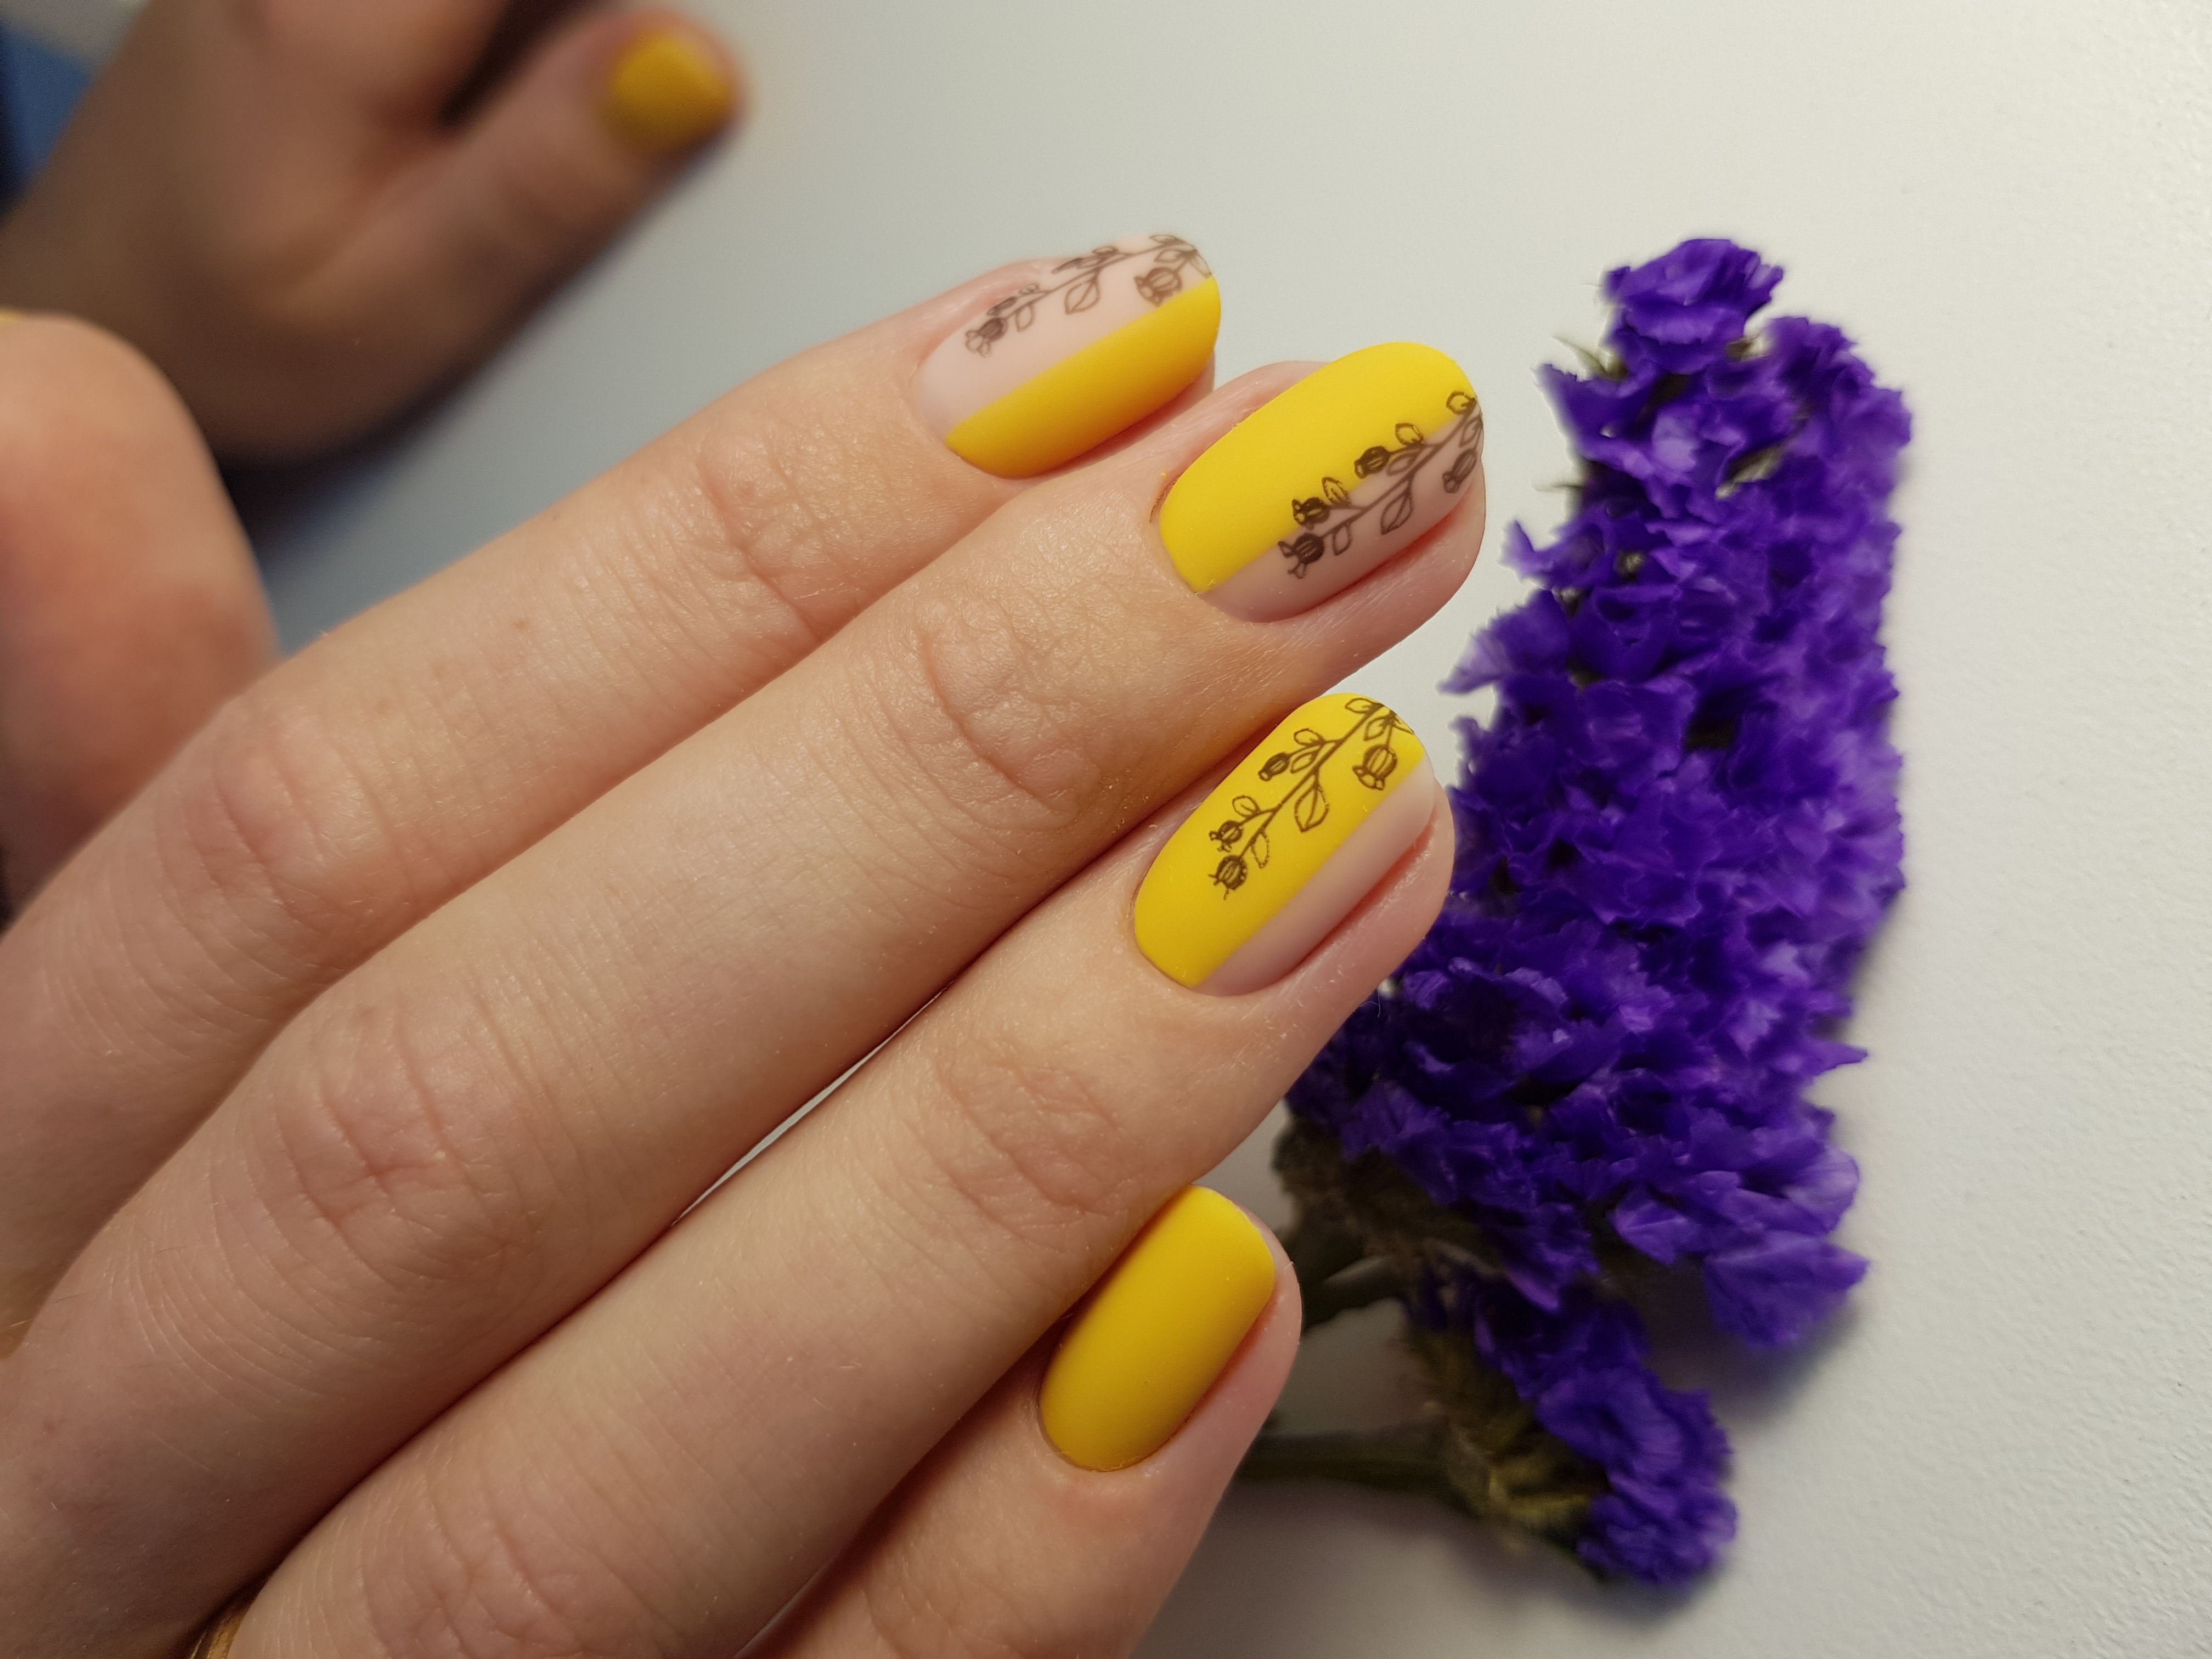 Матовый маникюр с растительными слайдерами в желтом цвете.